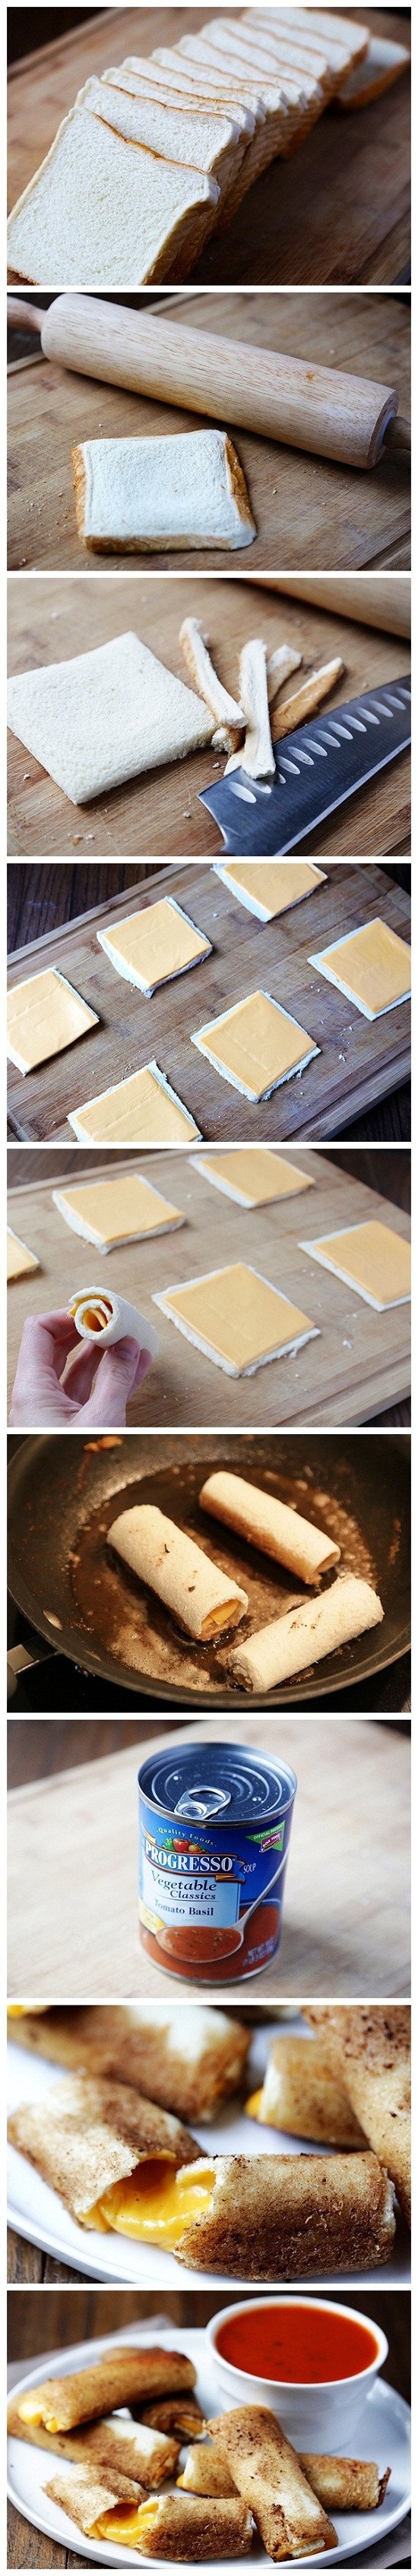 Simple cheese sticks. Genius.